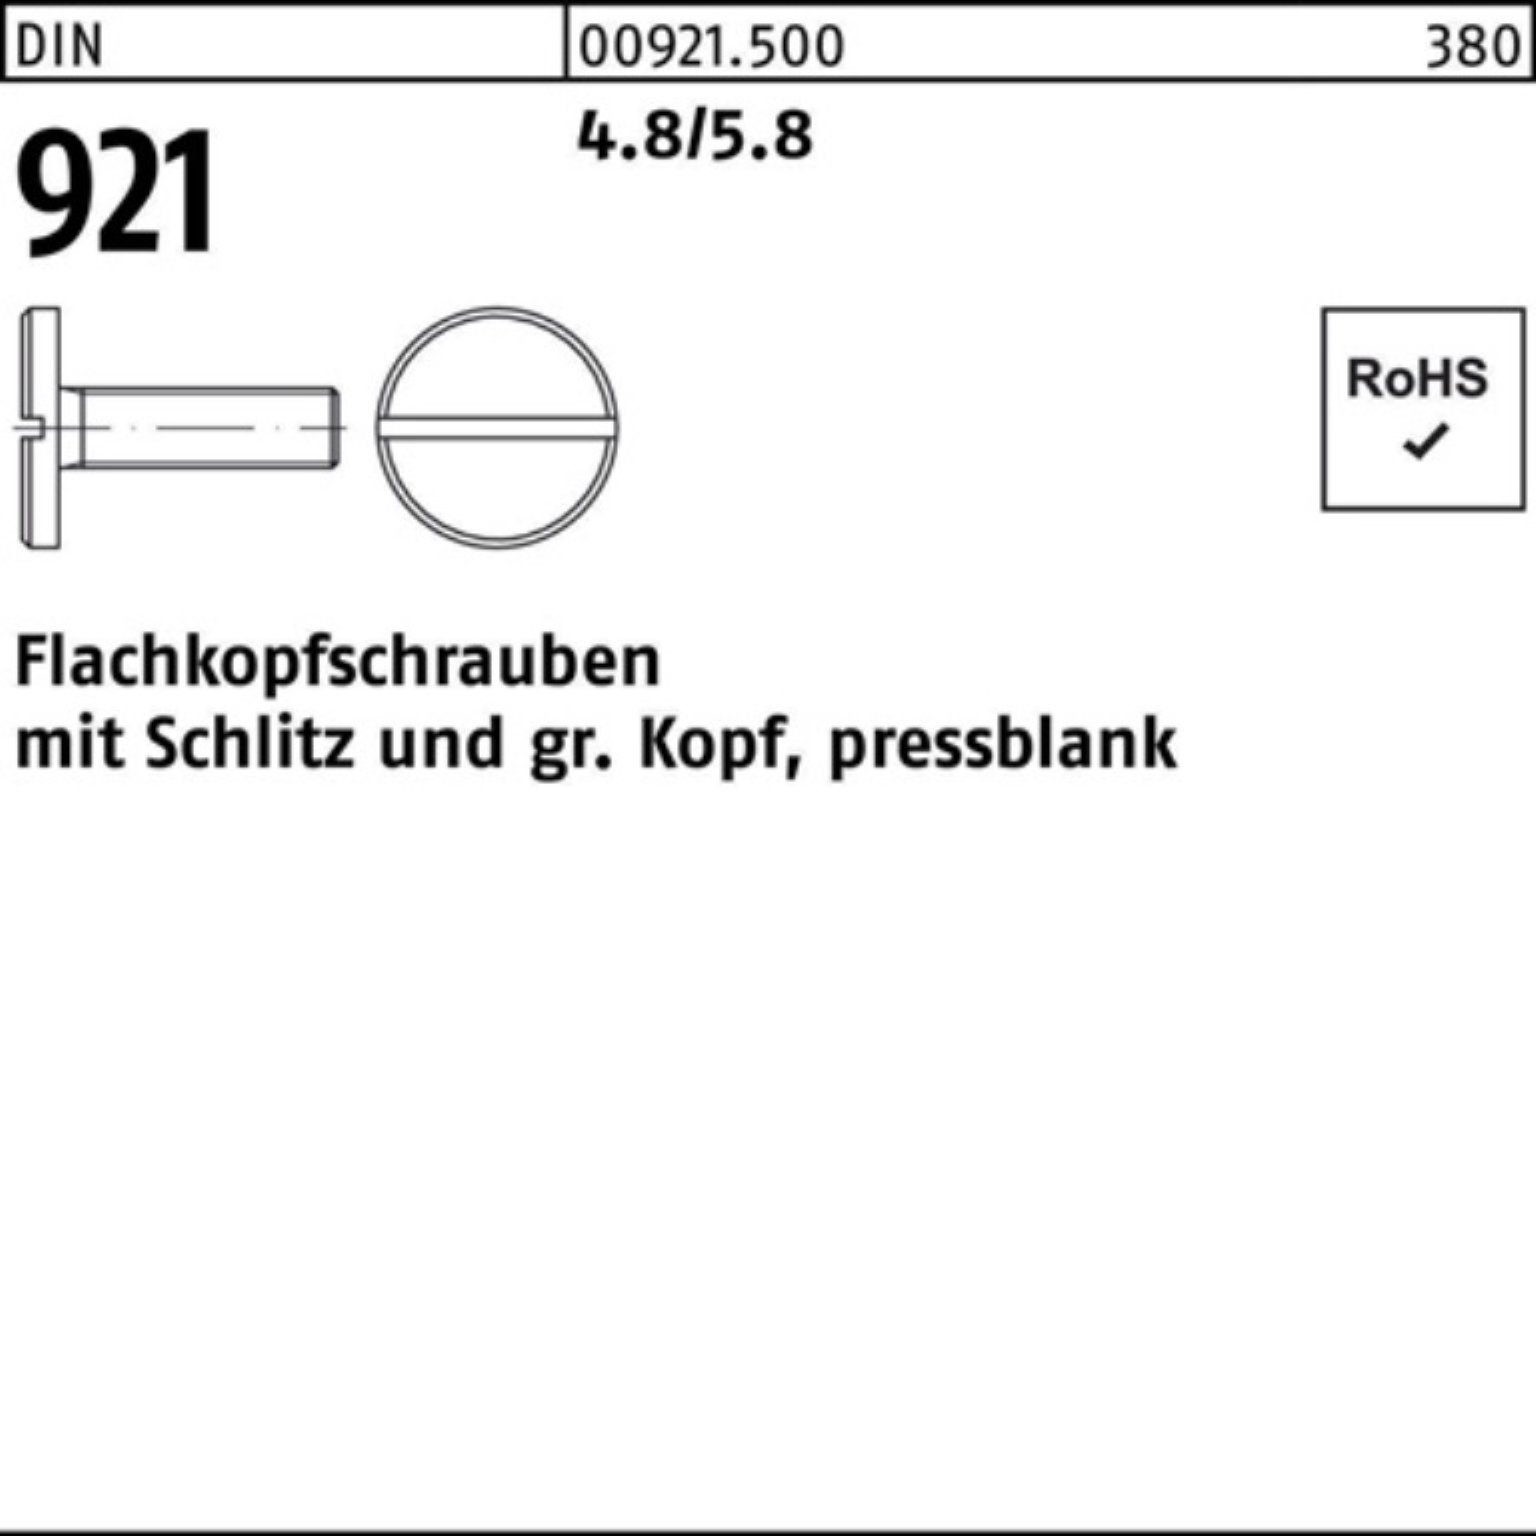 Reyher Schraube 100er Pack Flachkopfschraube DIN 921 Schlitz M5x 8 4.8/5.8 100 Stück